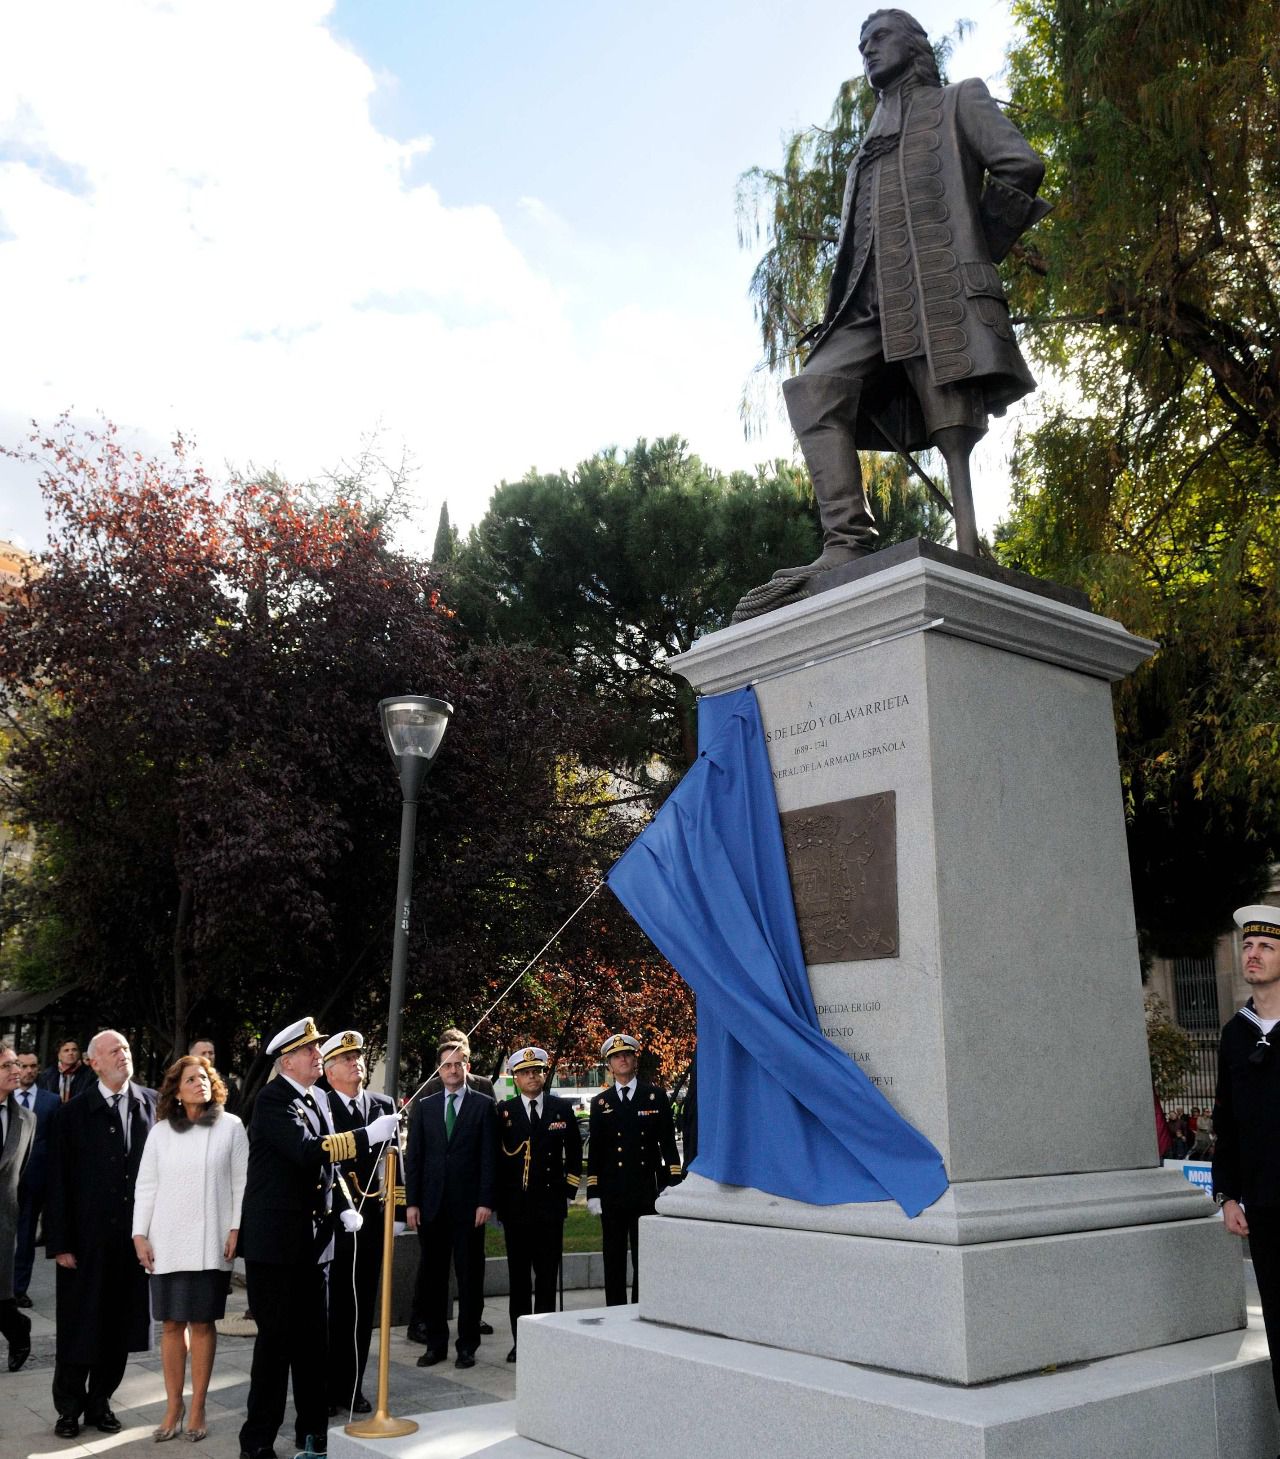 La alcaldesa de entonces de Madrid, Ana Botella, inauguraba junto al rey Don Juan Carlos I un monumento en la plaza de Colón del marino Blas de Lezo